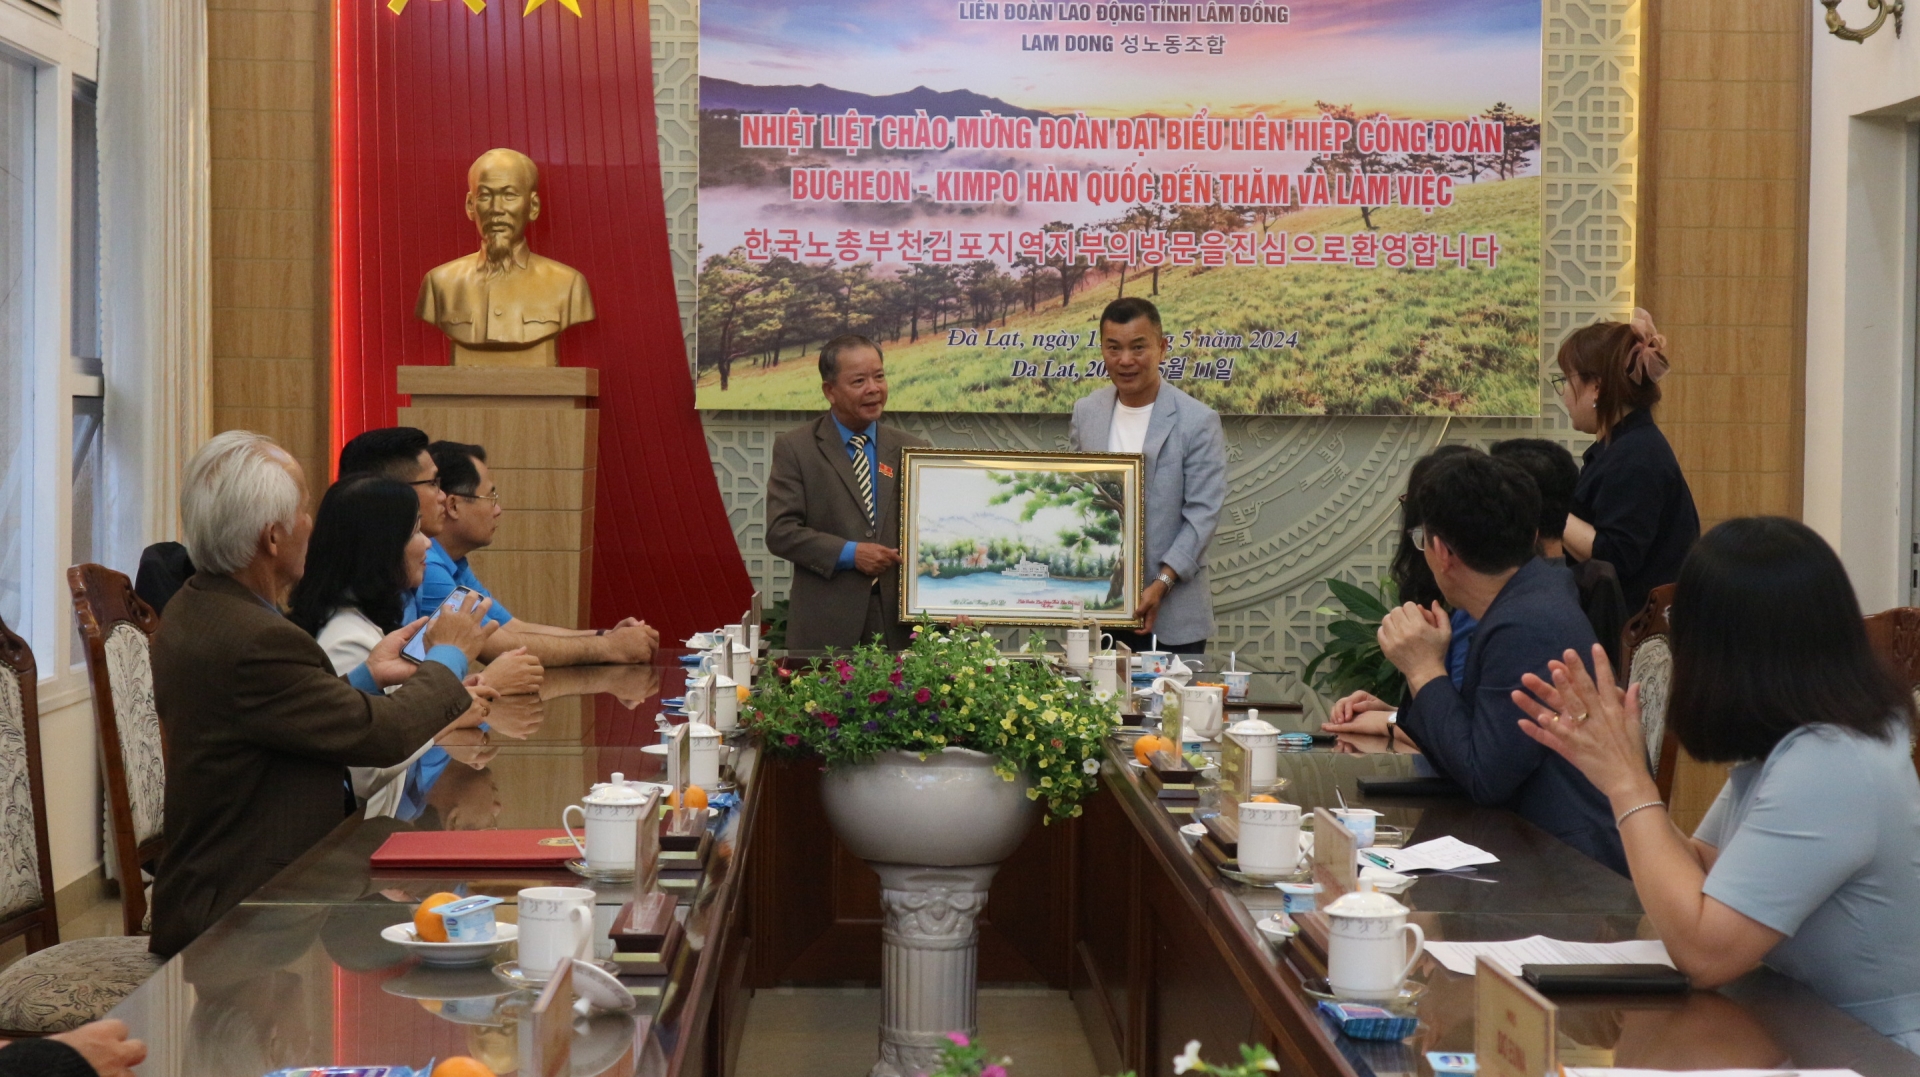 LĐLĐ Lâm Đồng tặng quà lưu niệm Liên hiệp Công đoàn thành phố Bucheon 